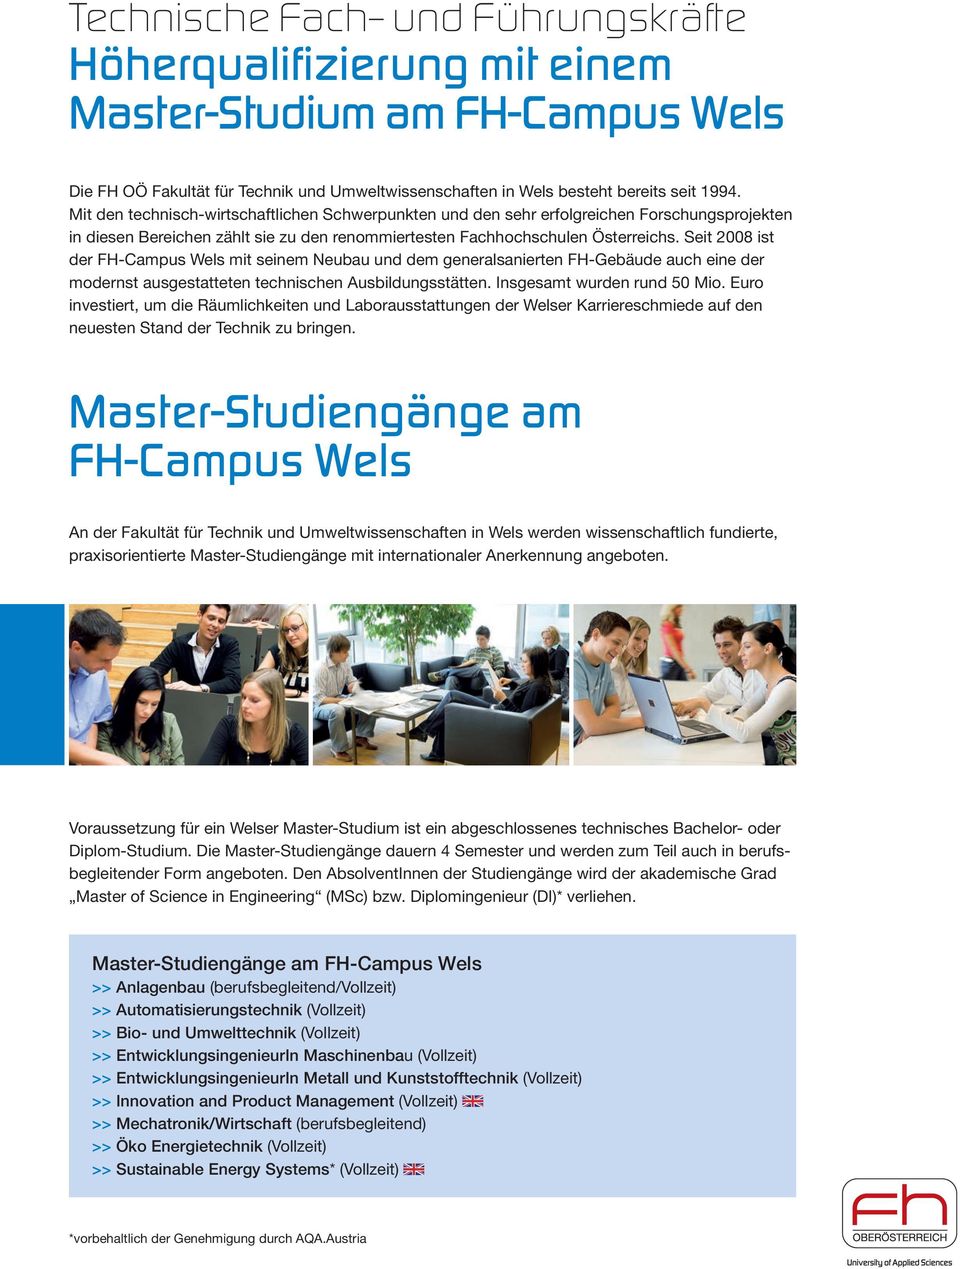 Seit 2008 ist der FH-Campus Wels mit seinem Neubau und dem generalsanierten FH-Gebäude auch eine der modernst ausgestatteten technischen Ausbildungsstätten. Insgesamt wurden rund 50 Mio.